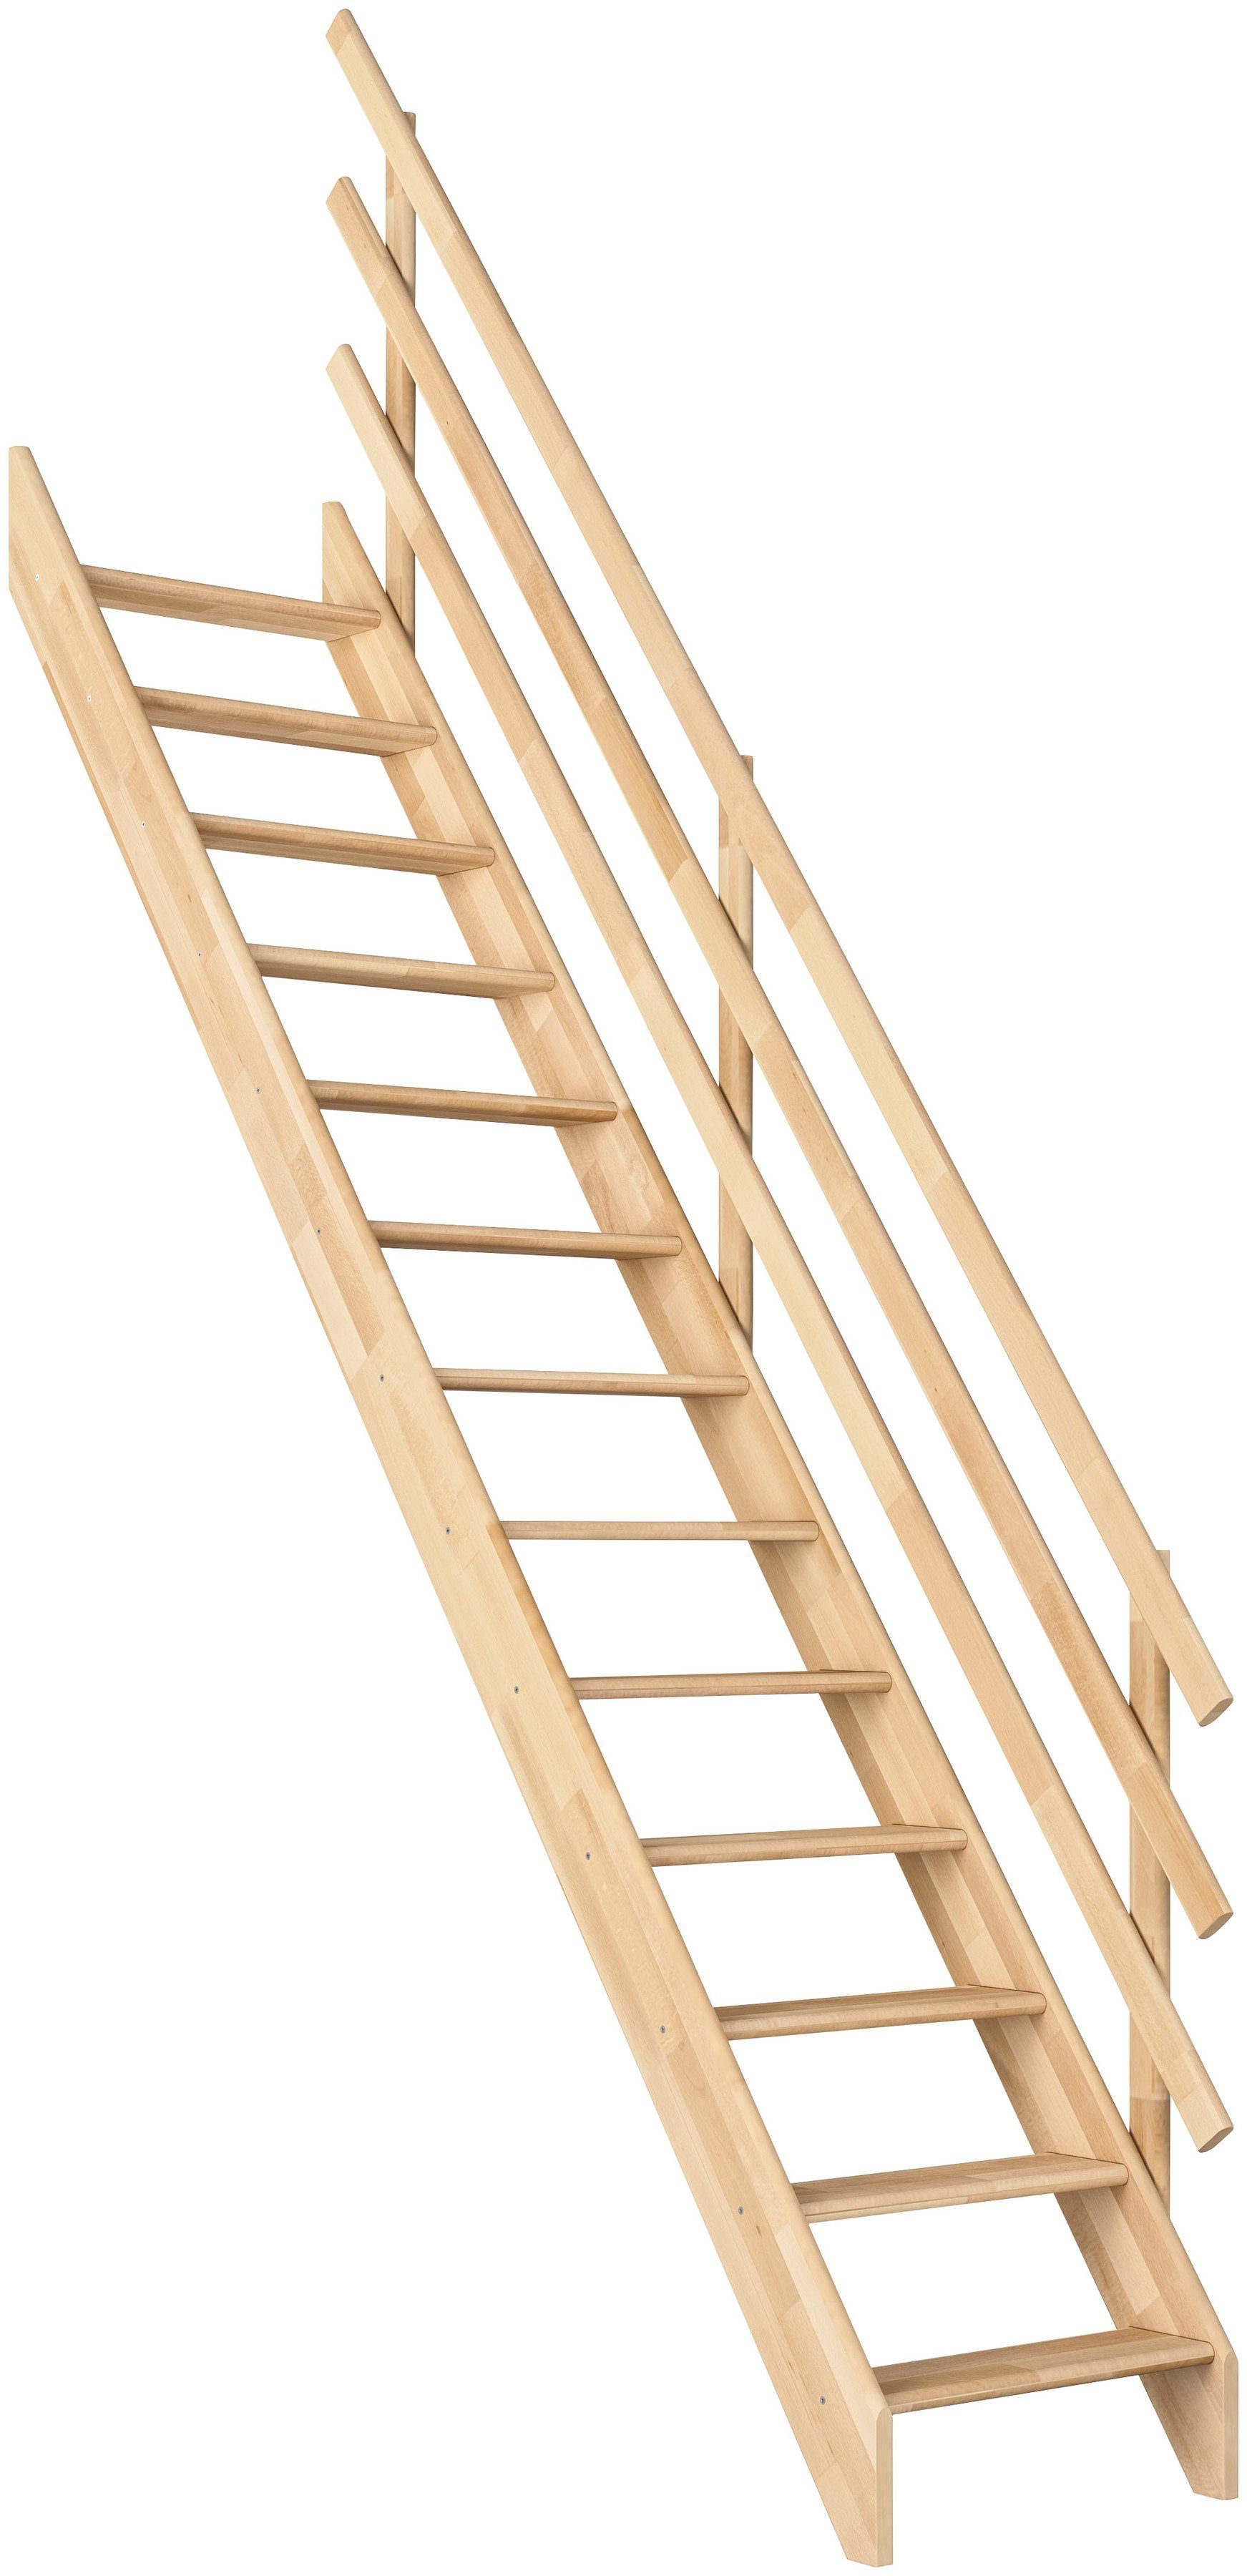 Dolle cm, cm, Holz, 63 285 bis Breite Burgau, Unbehandeltes Geschosshöhen Stufen für leicht Raumspartreppe abgerundet offen, Stufen